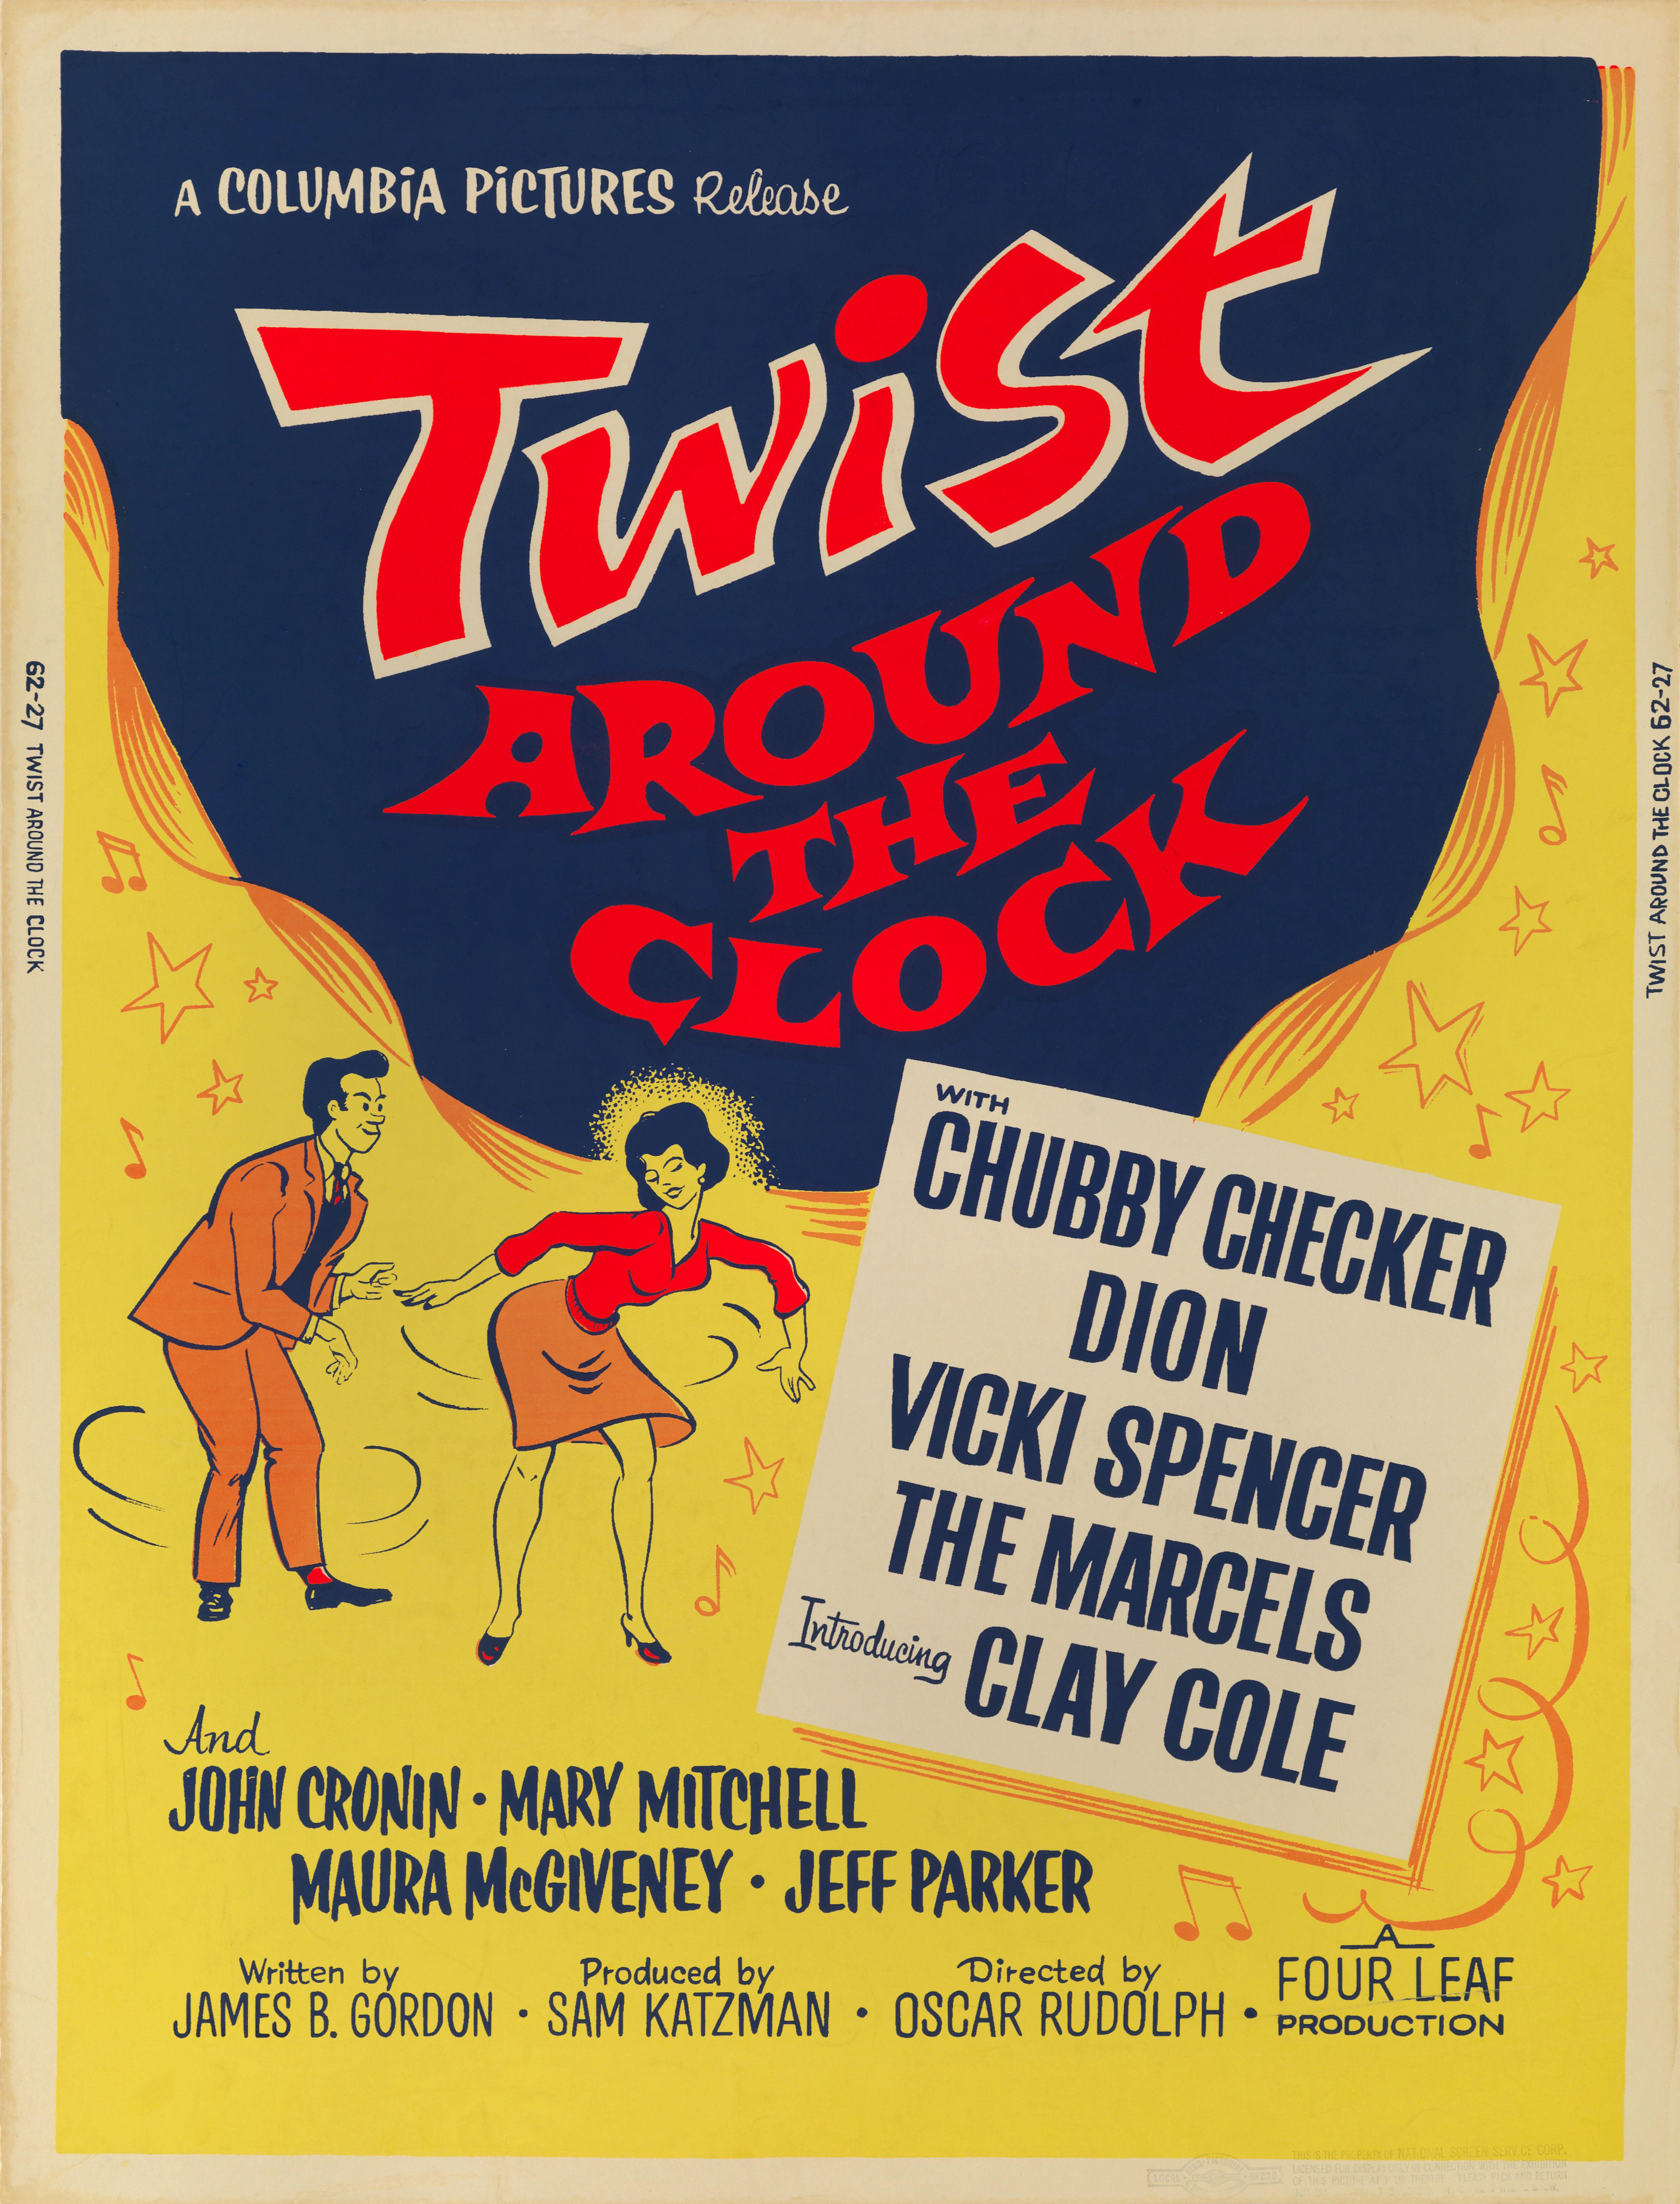 Original US-Filmplakat für das Musical Twist Around the Clock von 1961.
Bei diesem Film führte Oscar Rudolph Regie, und die Hauptrolle spielte Chubby Checker.
Dieses Plakat wurde auf schwererem Papier gedruckt und für besondere Vorführungen und